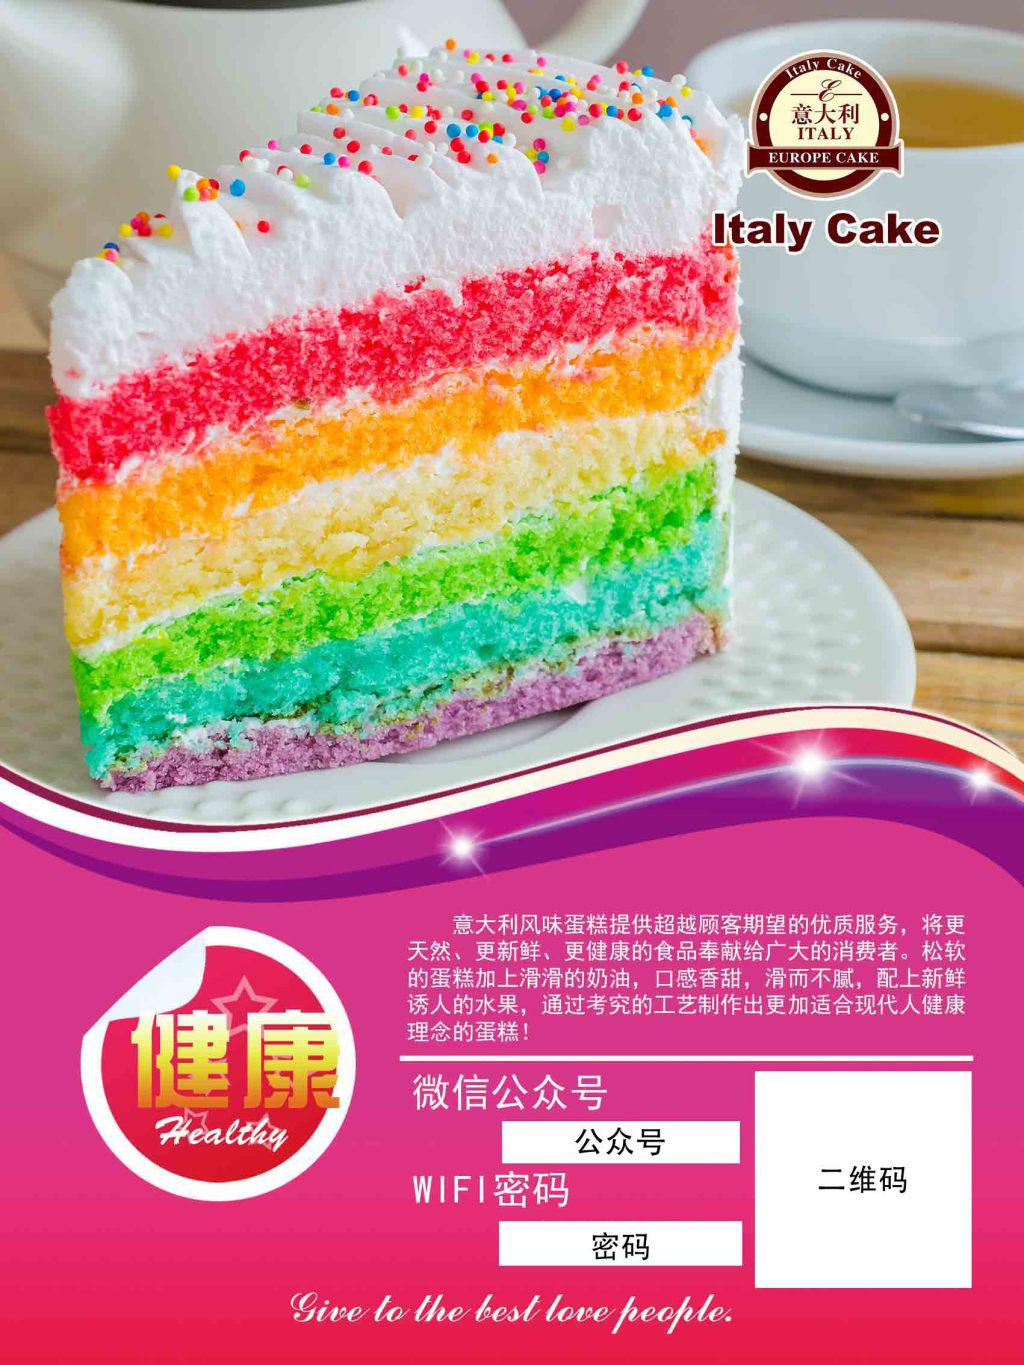 彩虹蛋糕展板图片插图源码资源库